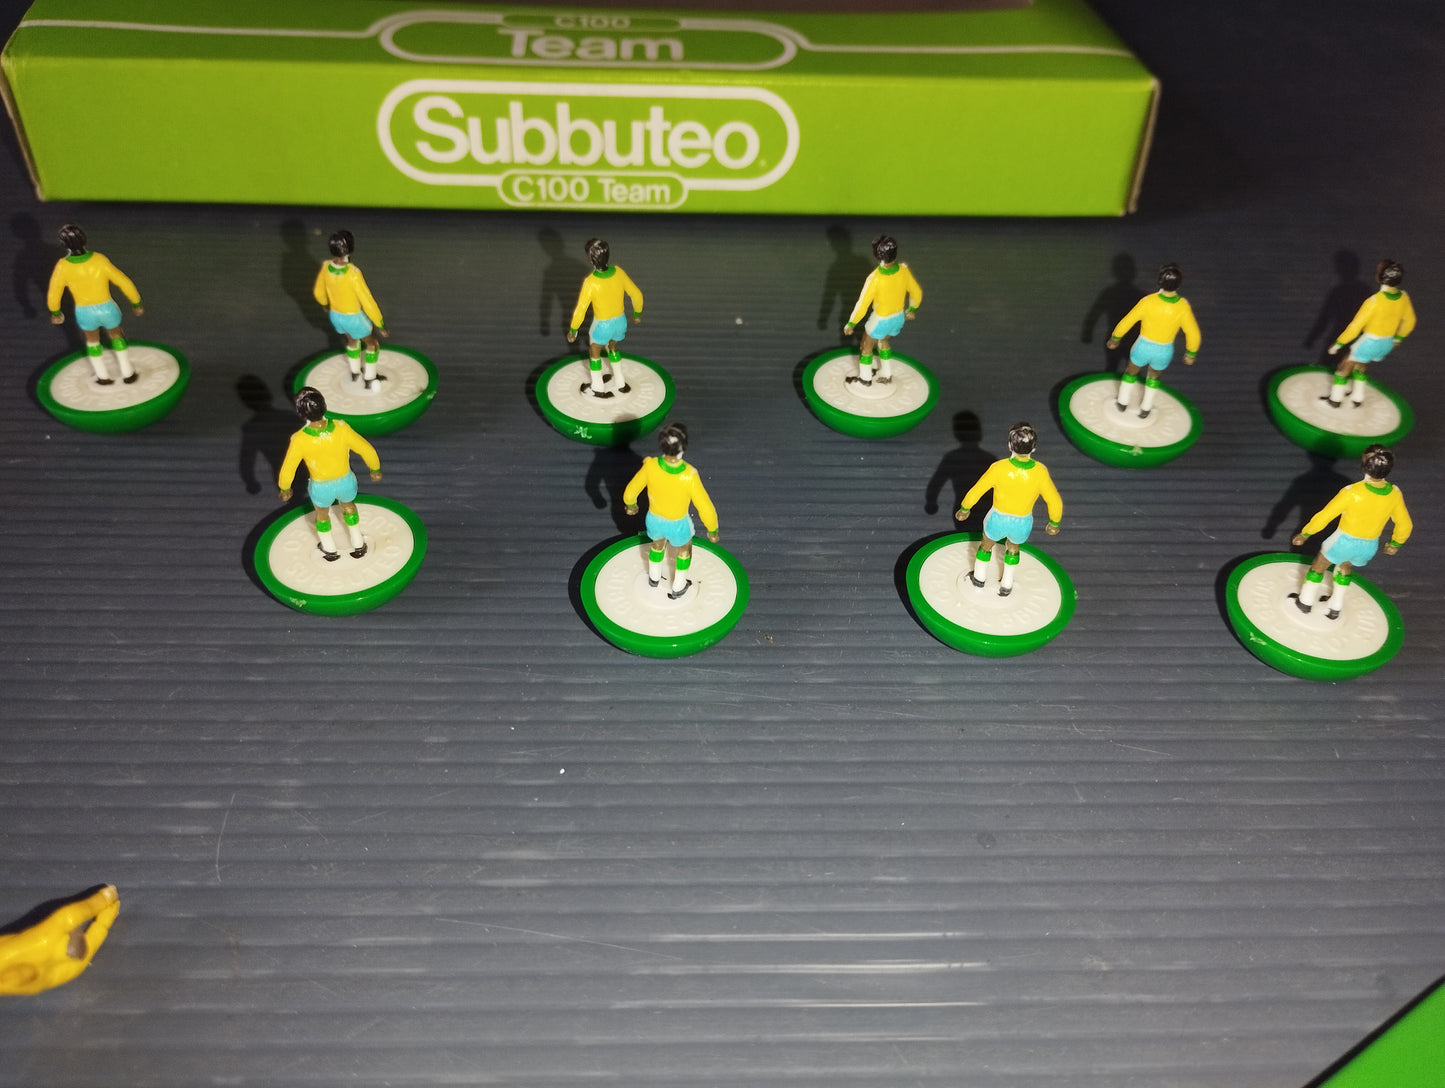 Subbuteo Squadra Brasile World Cup 1982

C100 Team